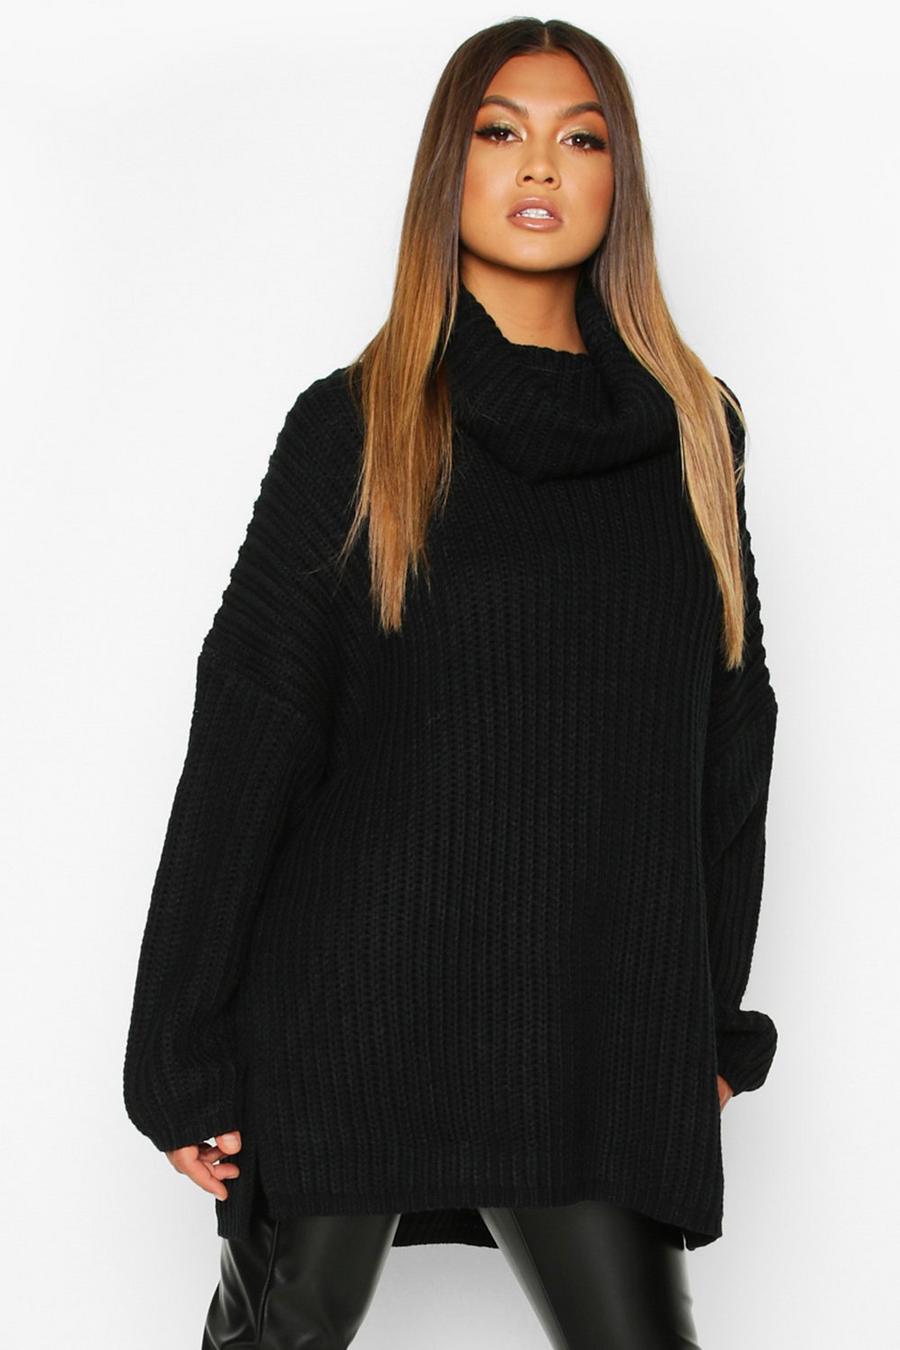 Black Sequin Knit jumper – AX Paris